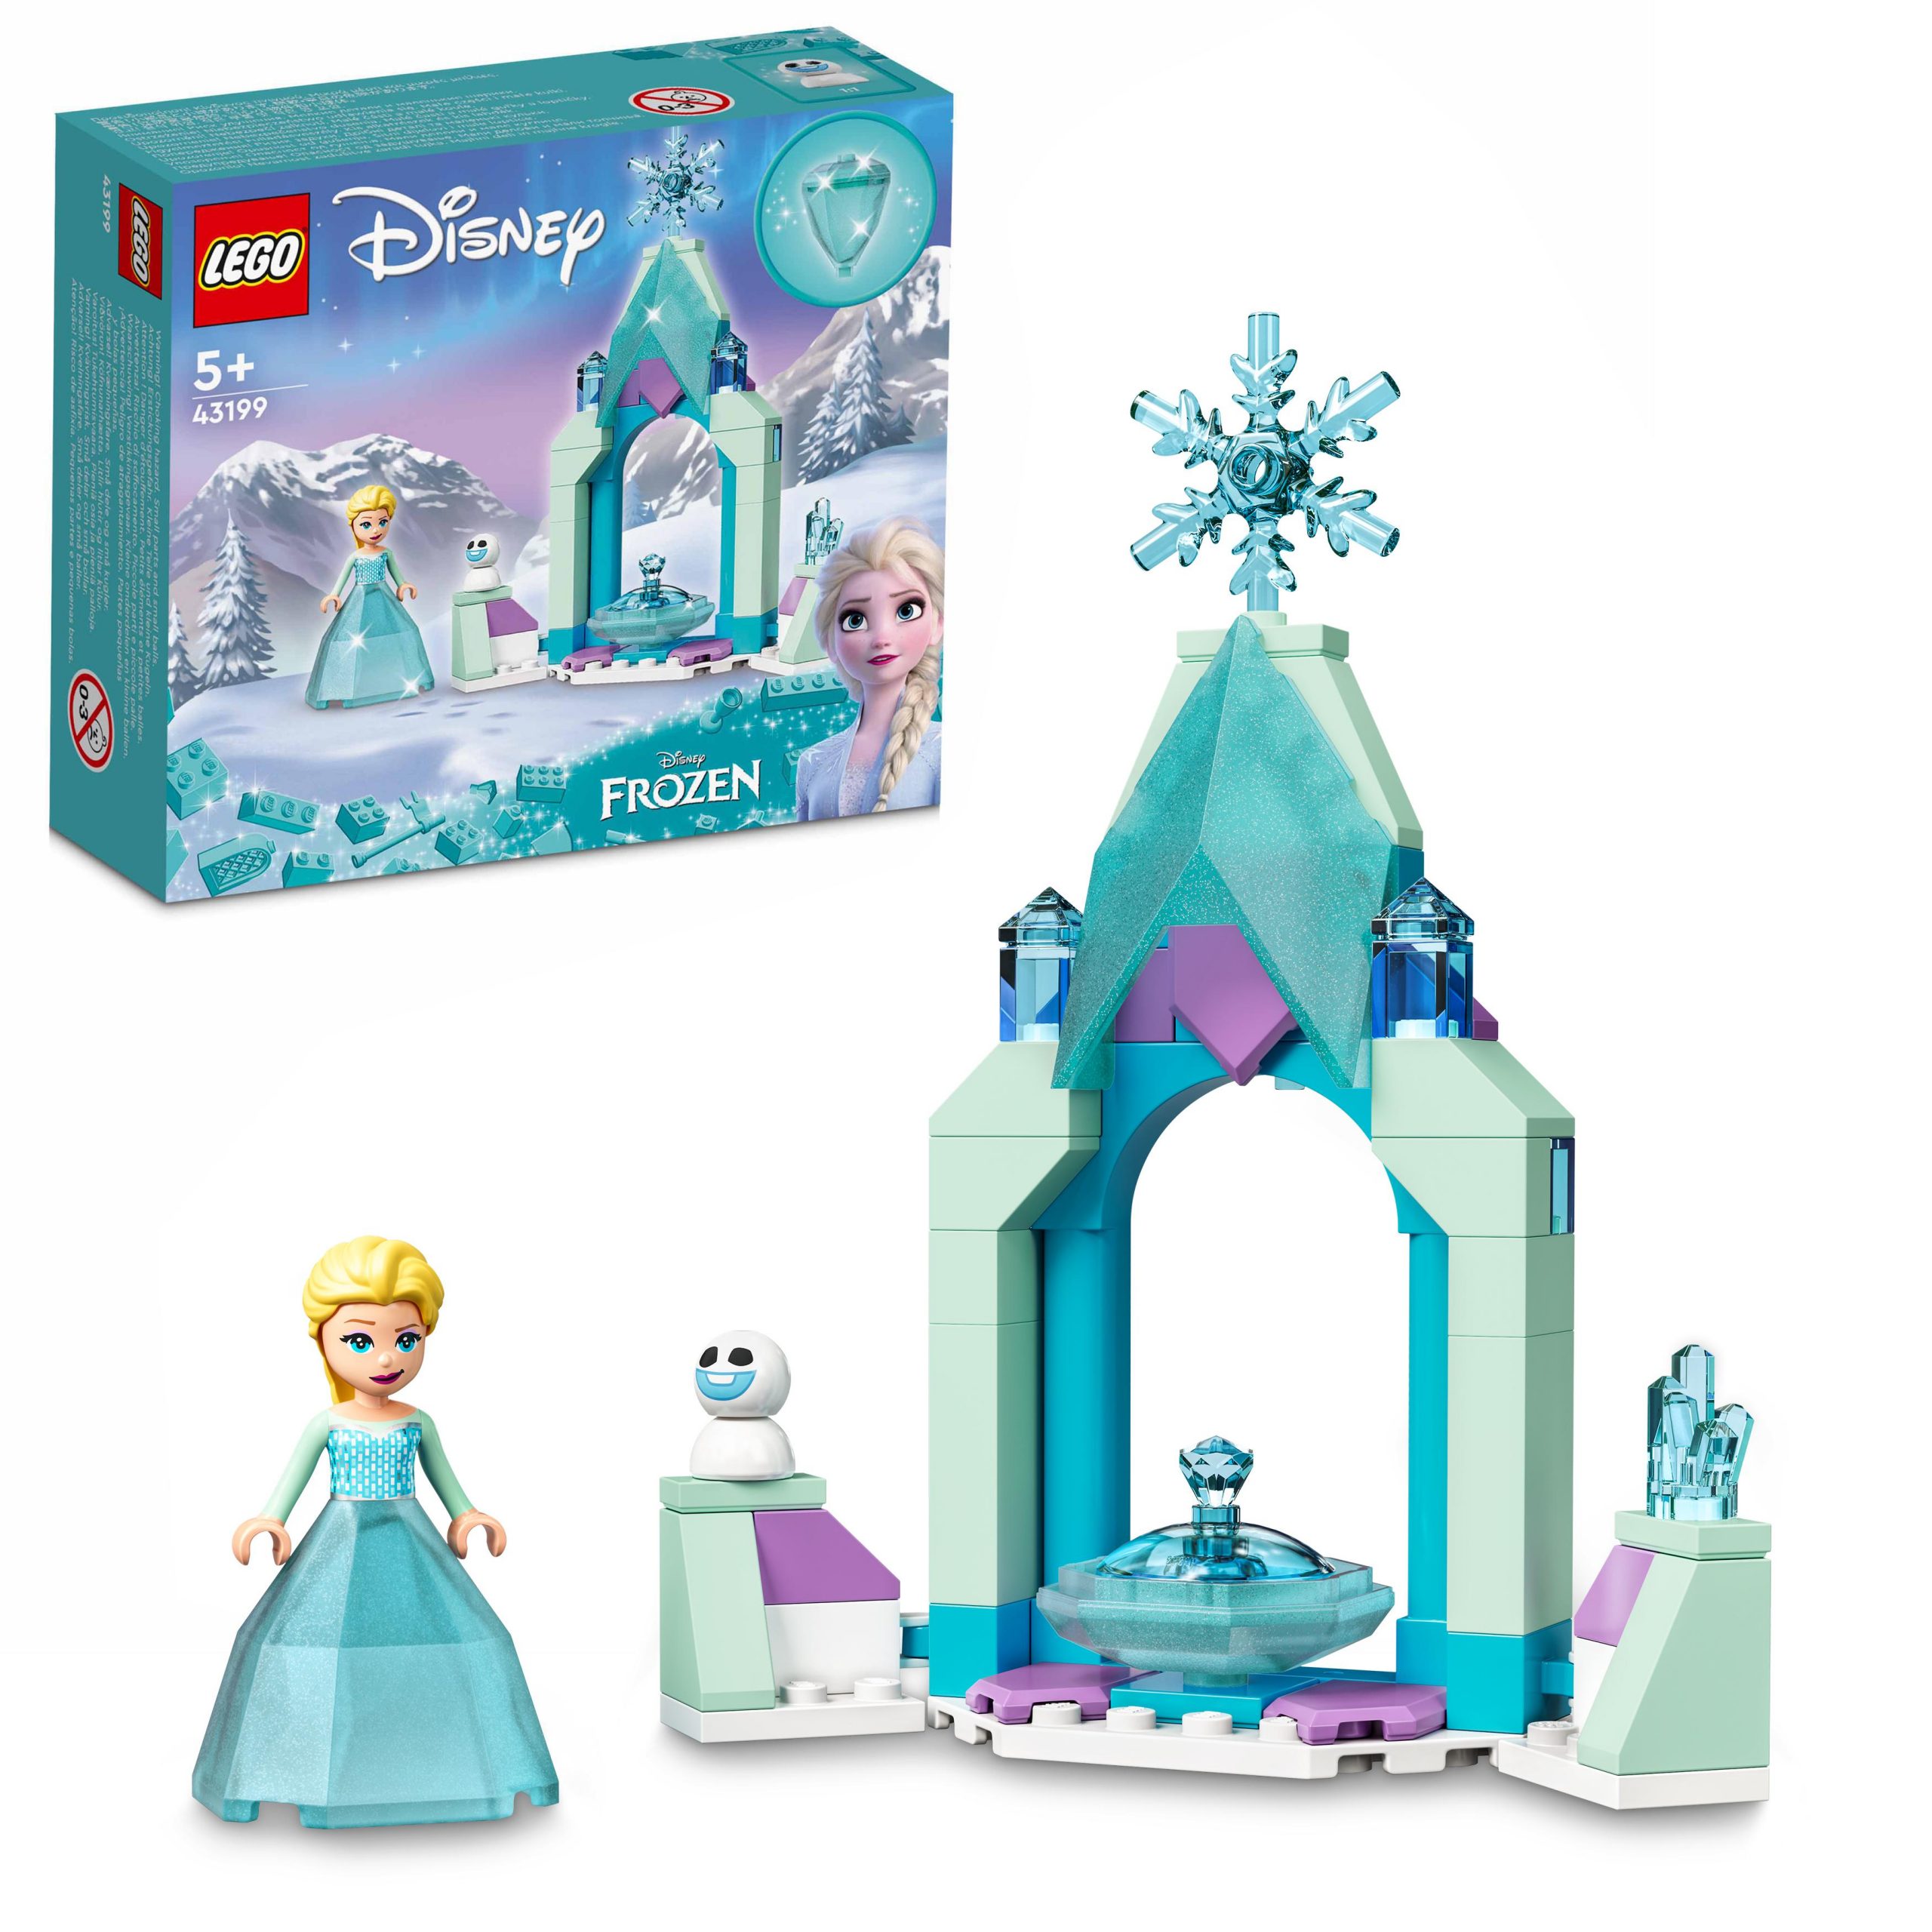 Lego disney il cortile del castello di elsa, giocattolo con principessa frozen 2, collezione abito diamante, 43199 - DISNEY PRINCESS, LEGO® Disney Frozen, Frozen, Lego